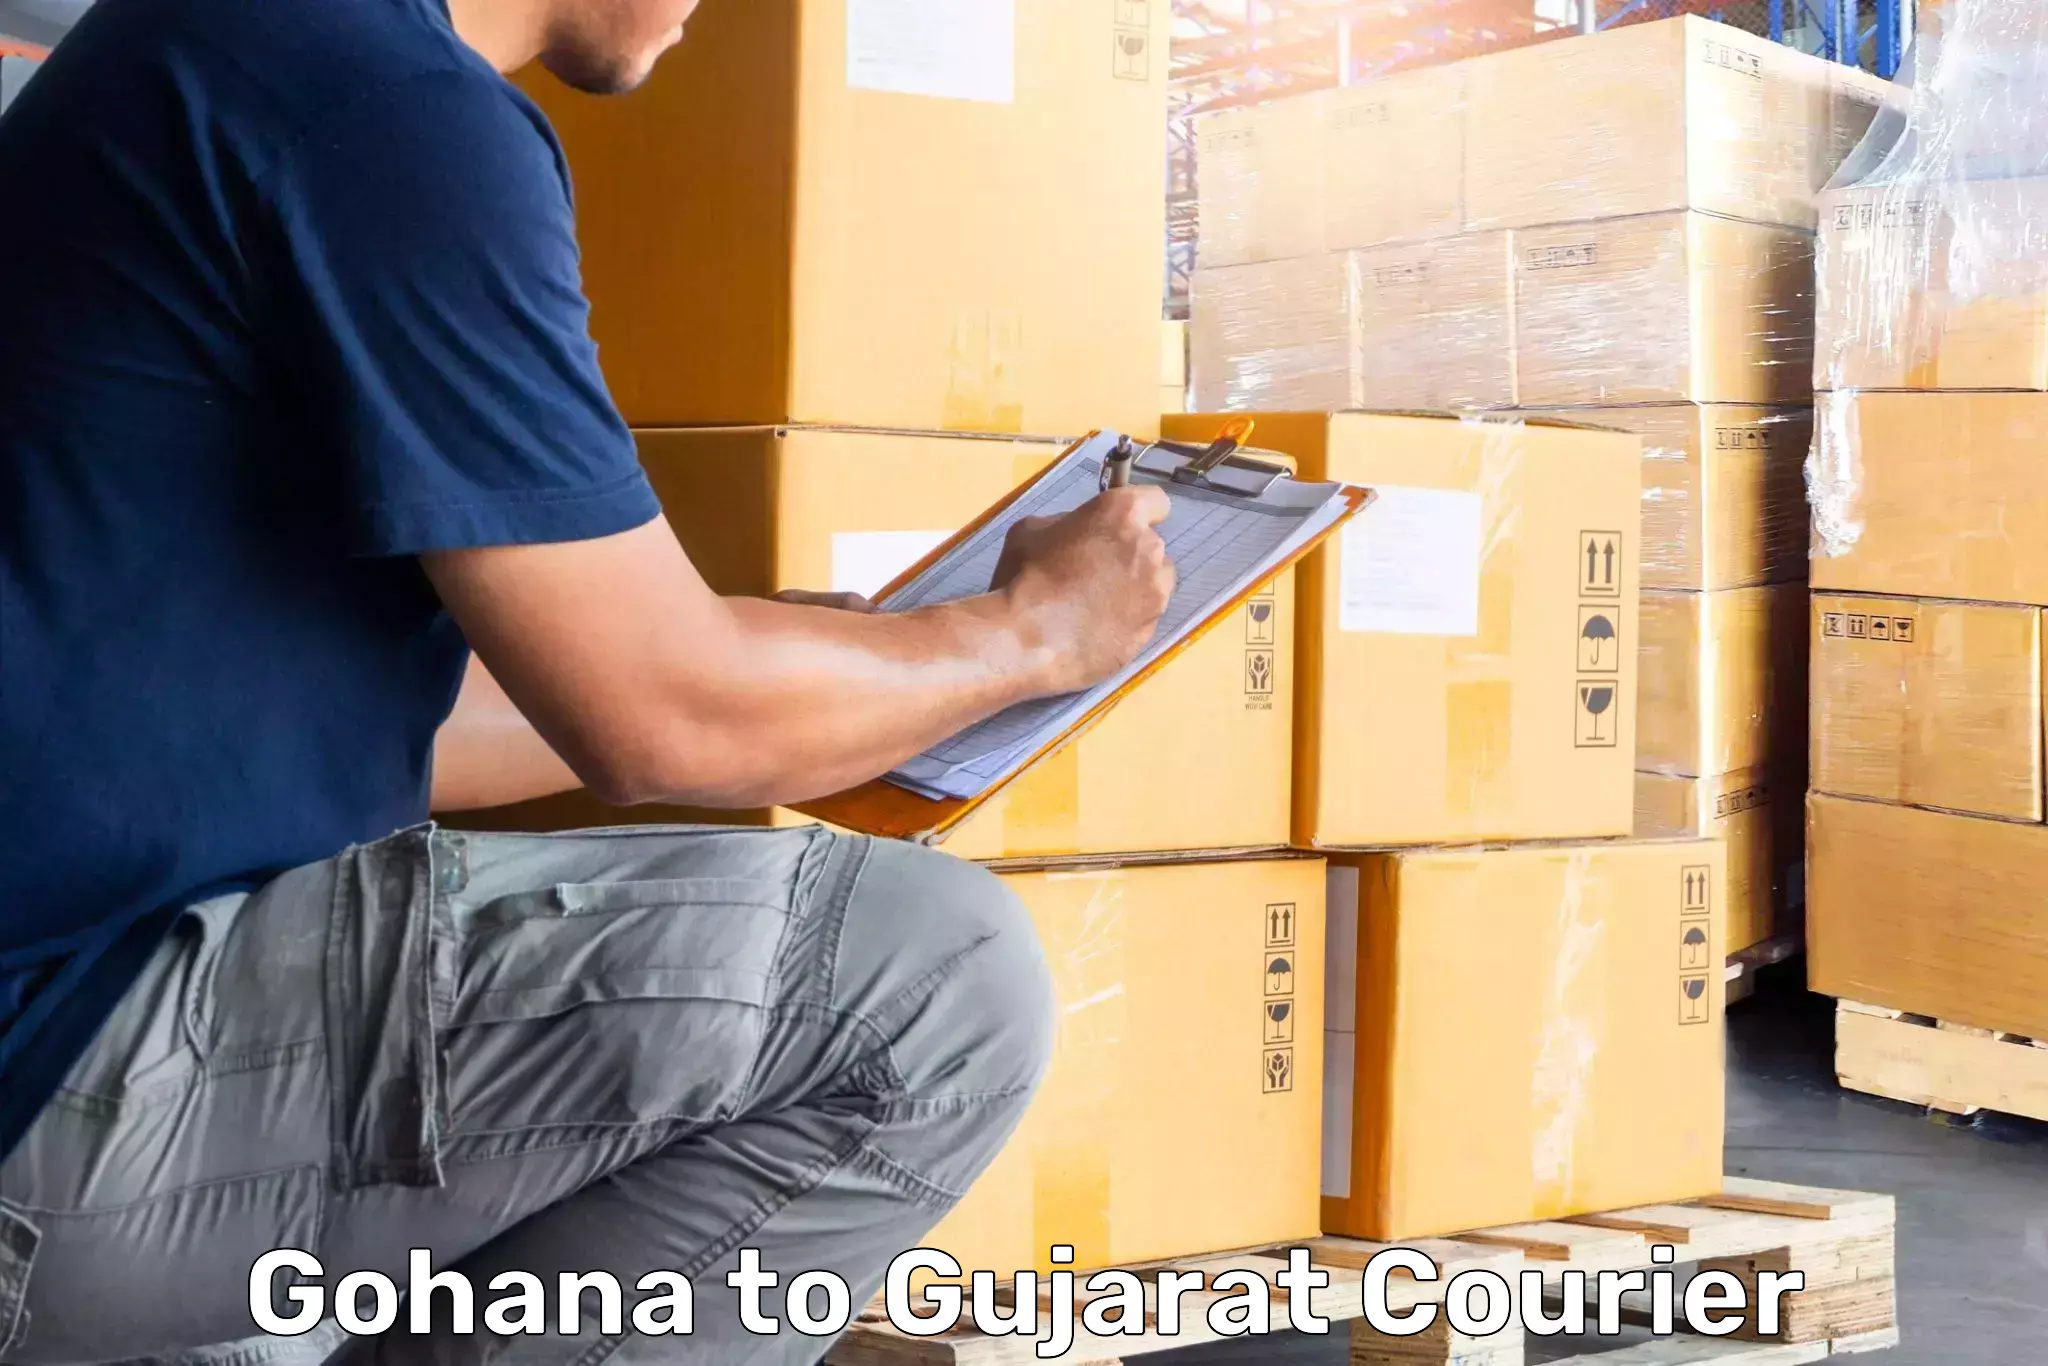 Luggage shipment tracking Gohana to Bhabhar